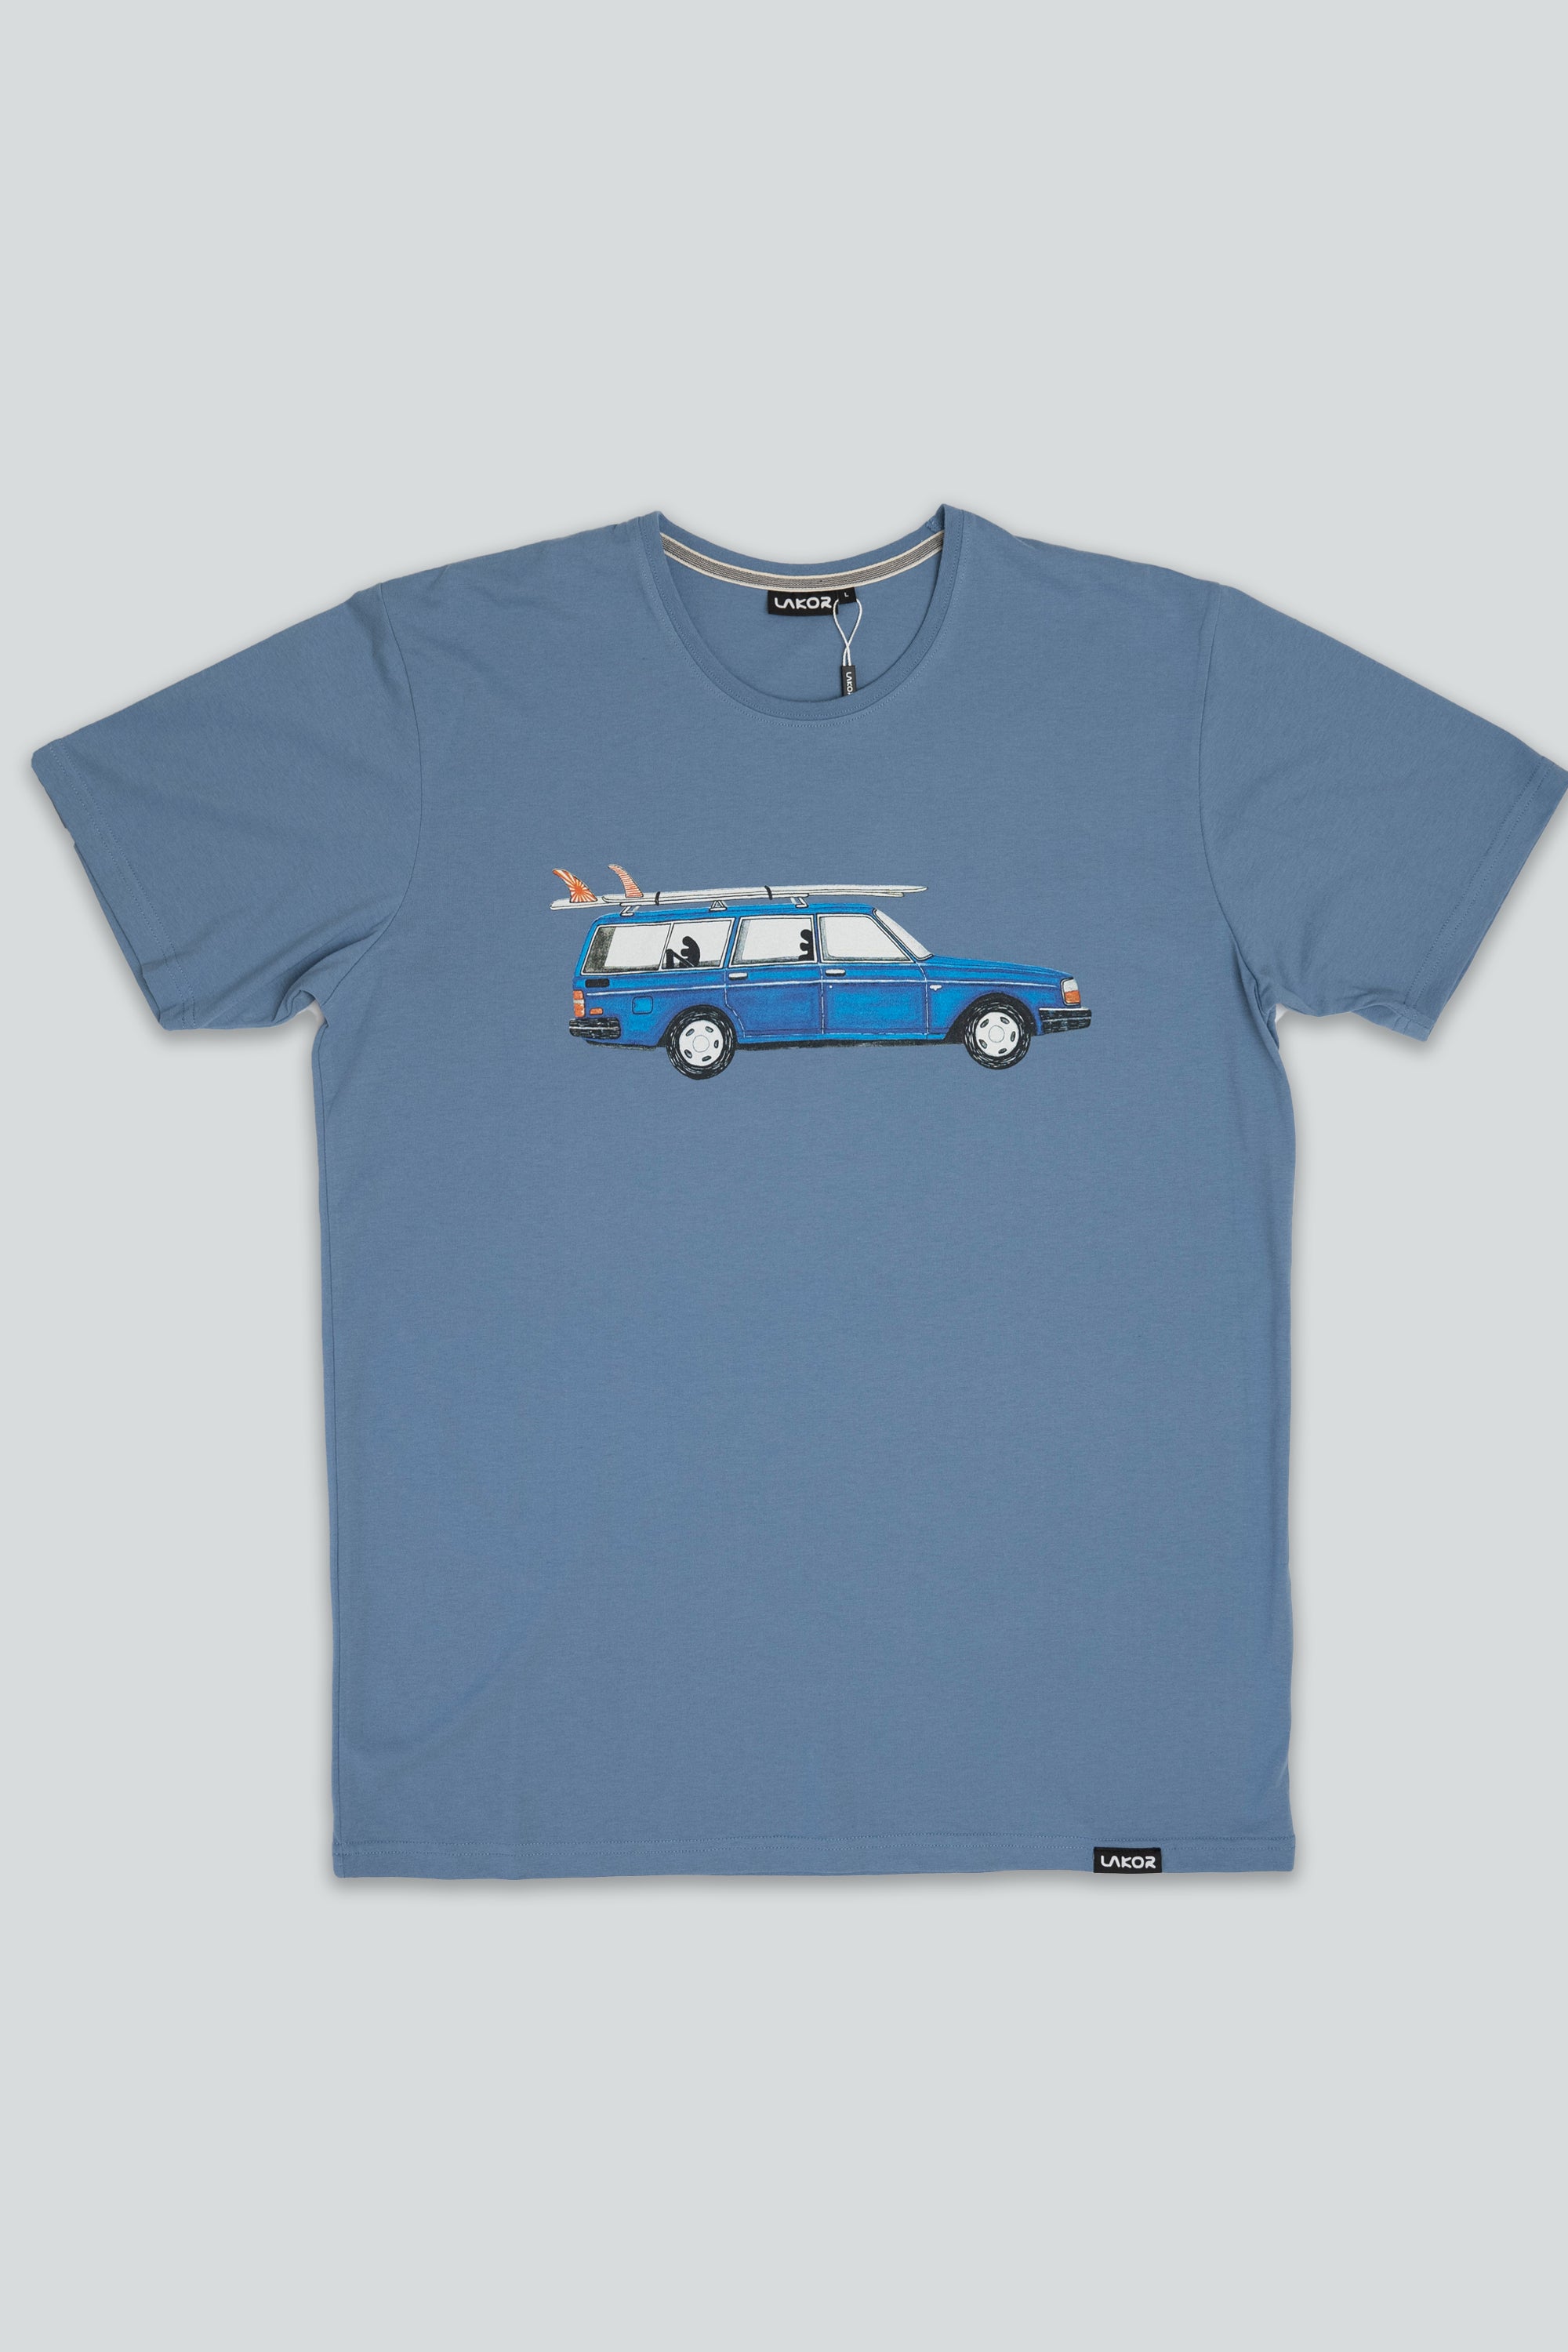 Getaway Car T-shirt (Light Blue)